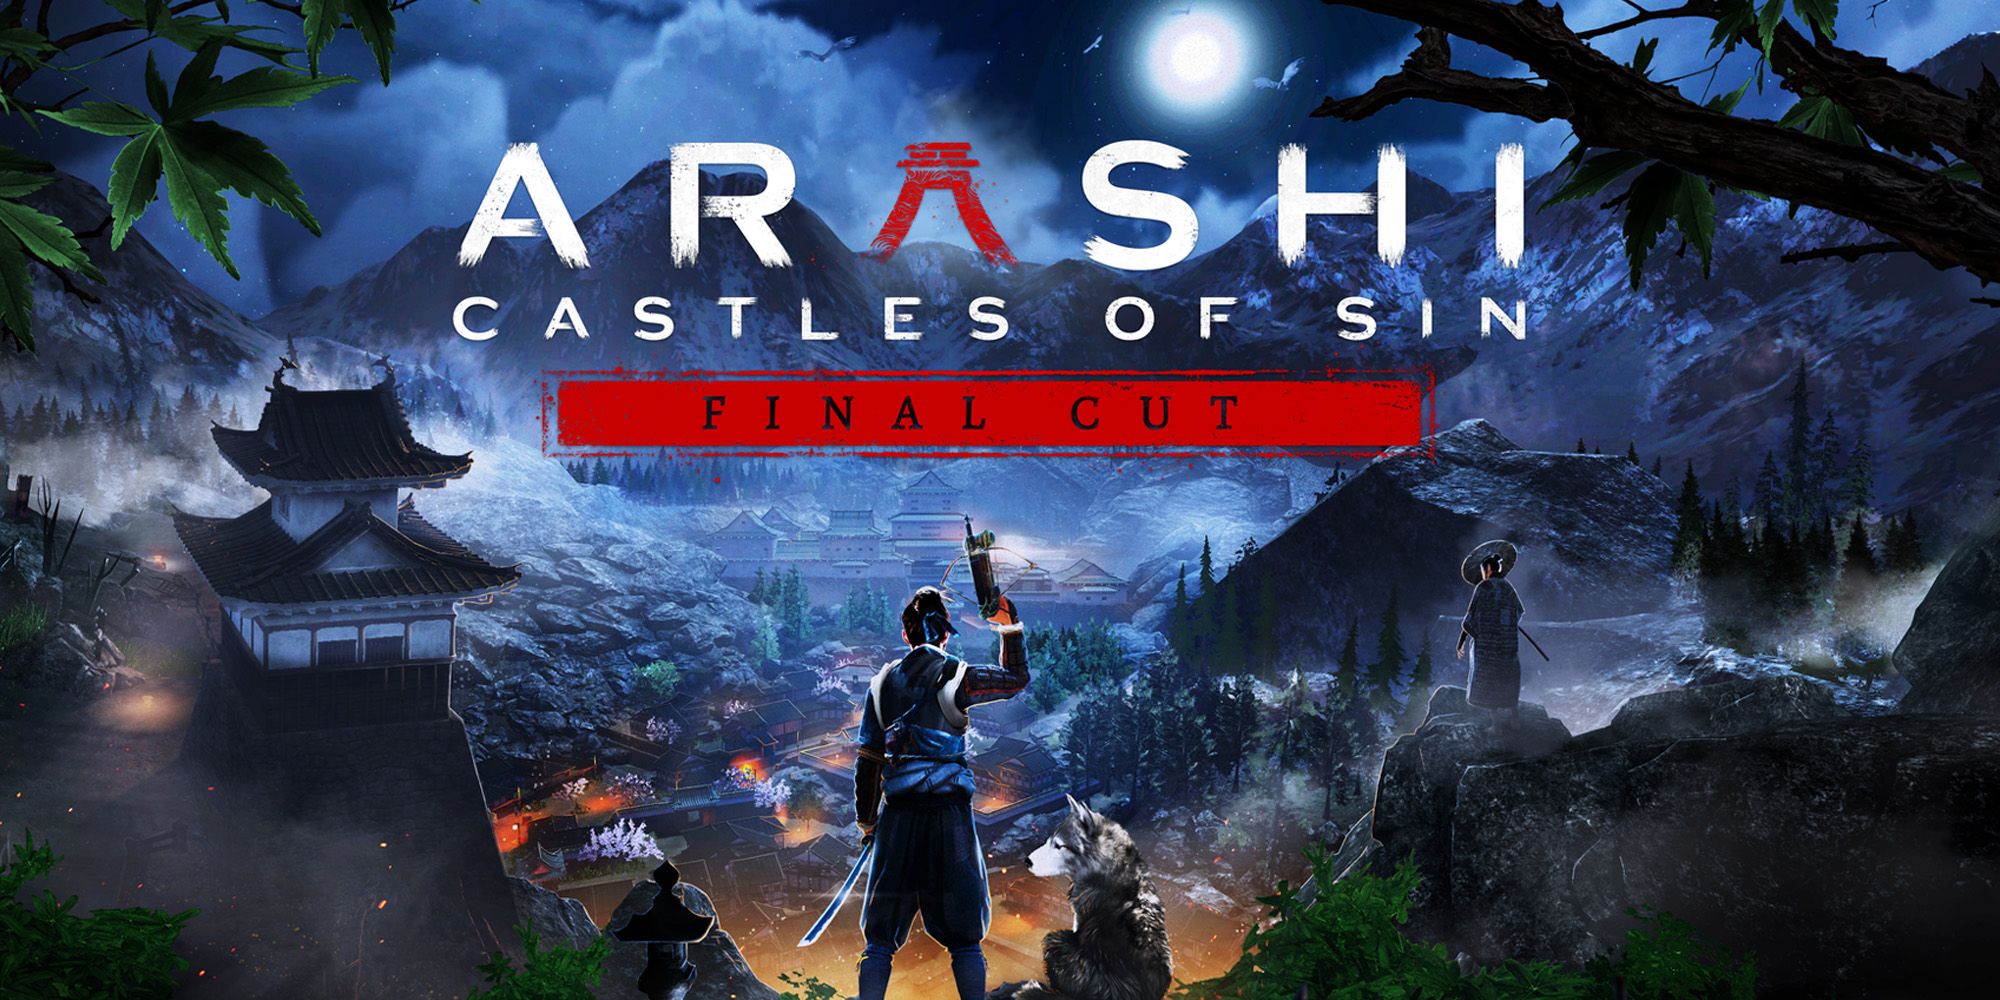 "Un primer borrador, no un montaje final" - Arashi: Castles of Sin - Revisión del montaje final